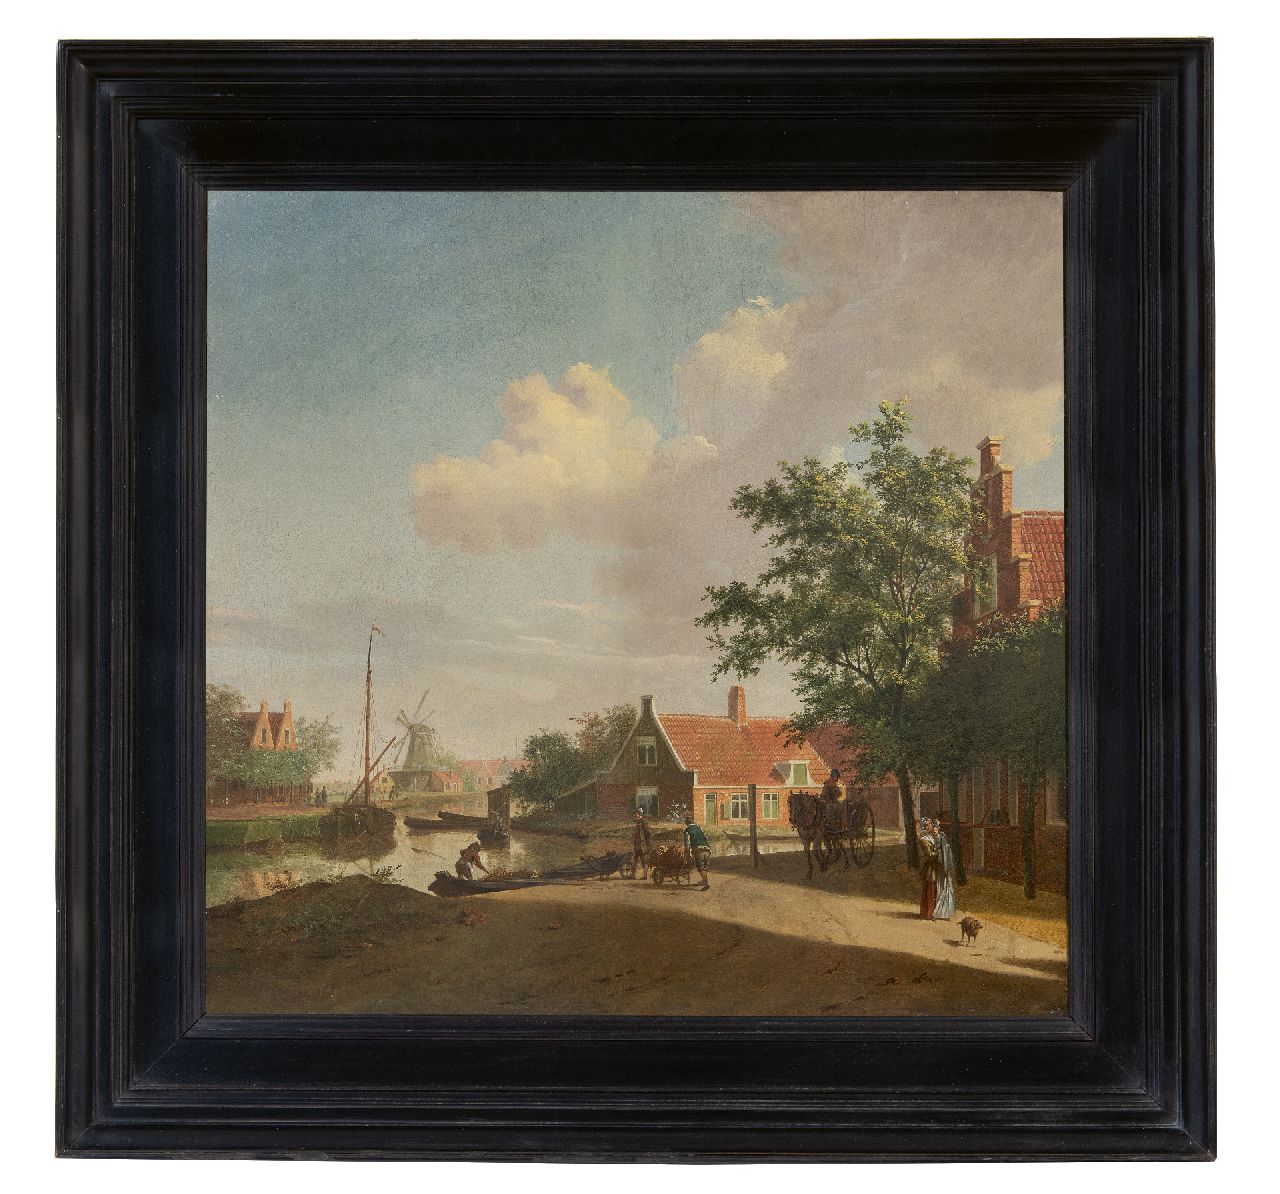 Toorenburgh G.  | Gerrit Toorenburgh | Schilderijen te koop aangeboden | Bedrijvigheid bij een Hollandse dorpsvaart, olieverf op paneel 42,6 x 44,6 cm, gesigneerd linksonder met initialen en gedateerd 1769